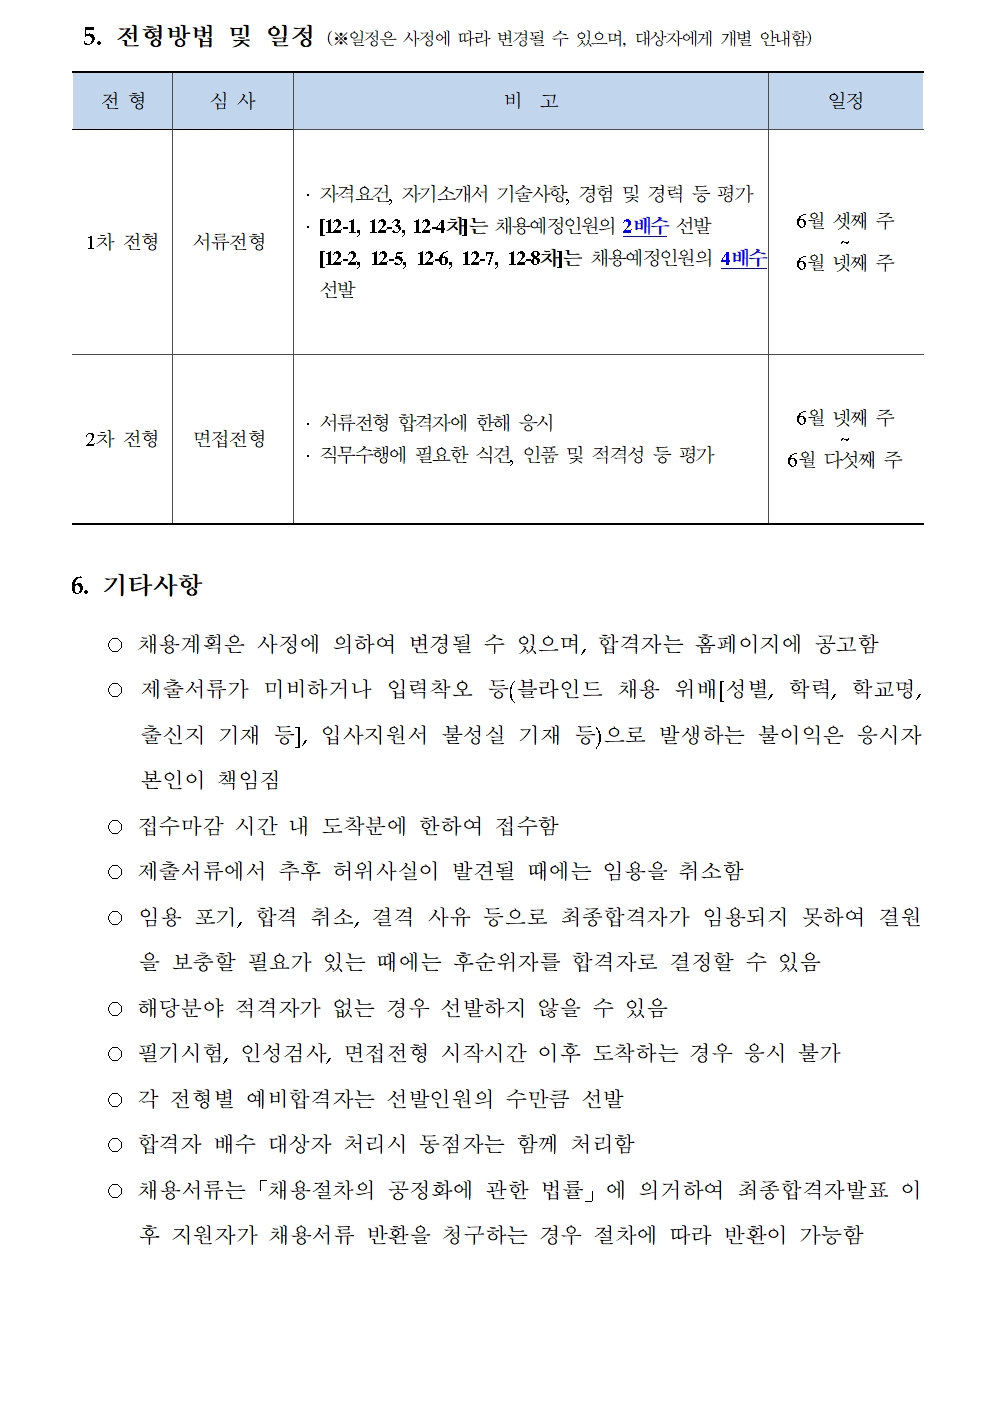 (3/3)한국형사법무정책연구원 제13차 채용공고 - 자세한 내용은 하단참조